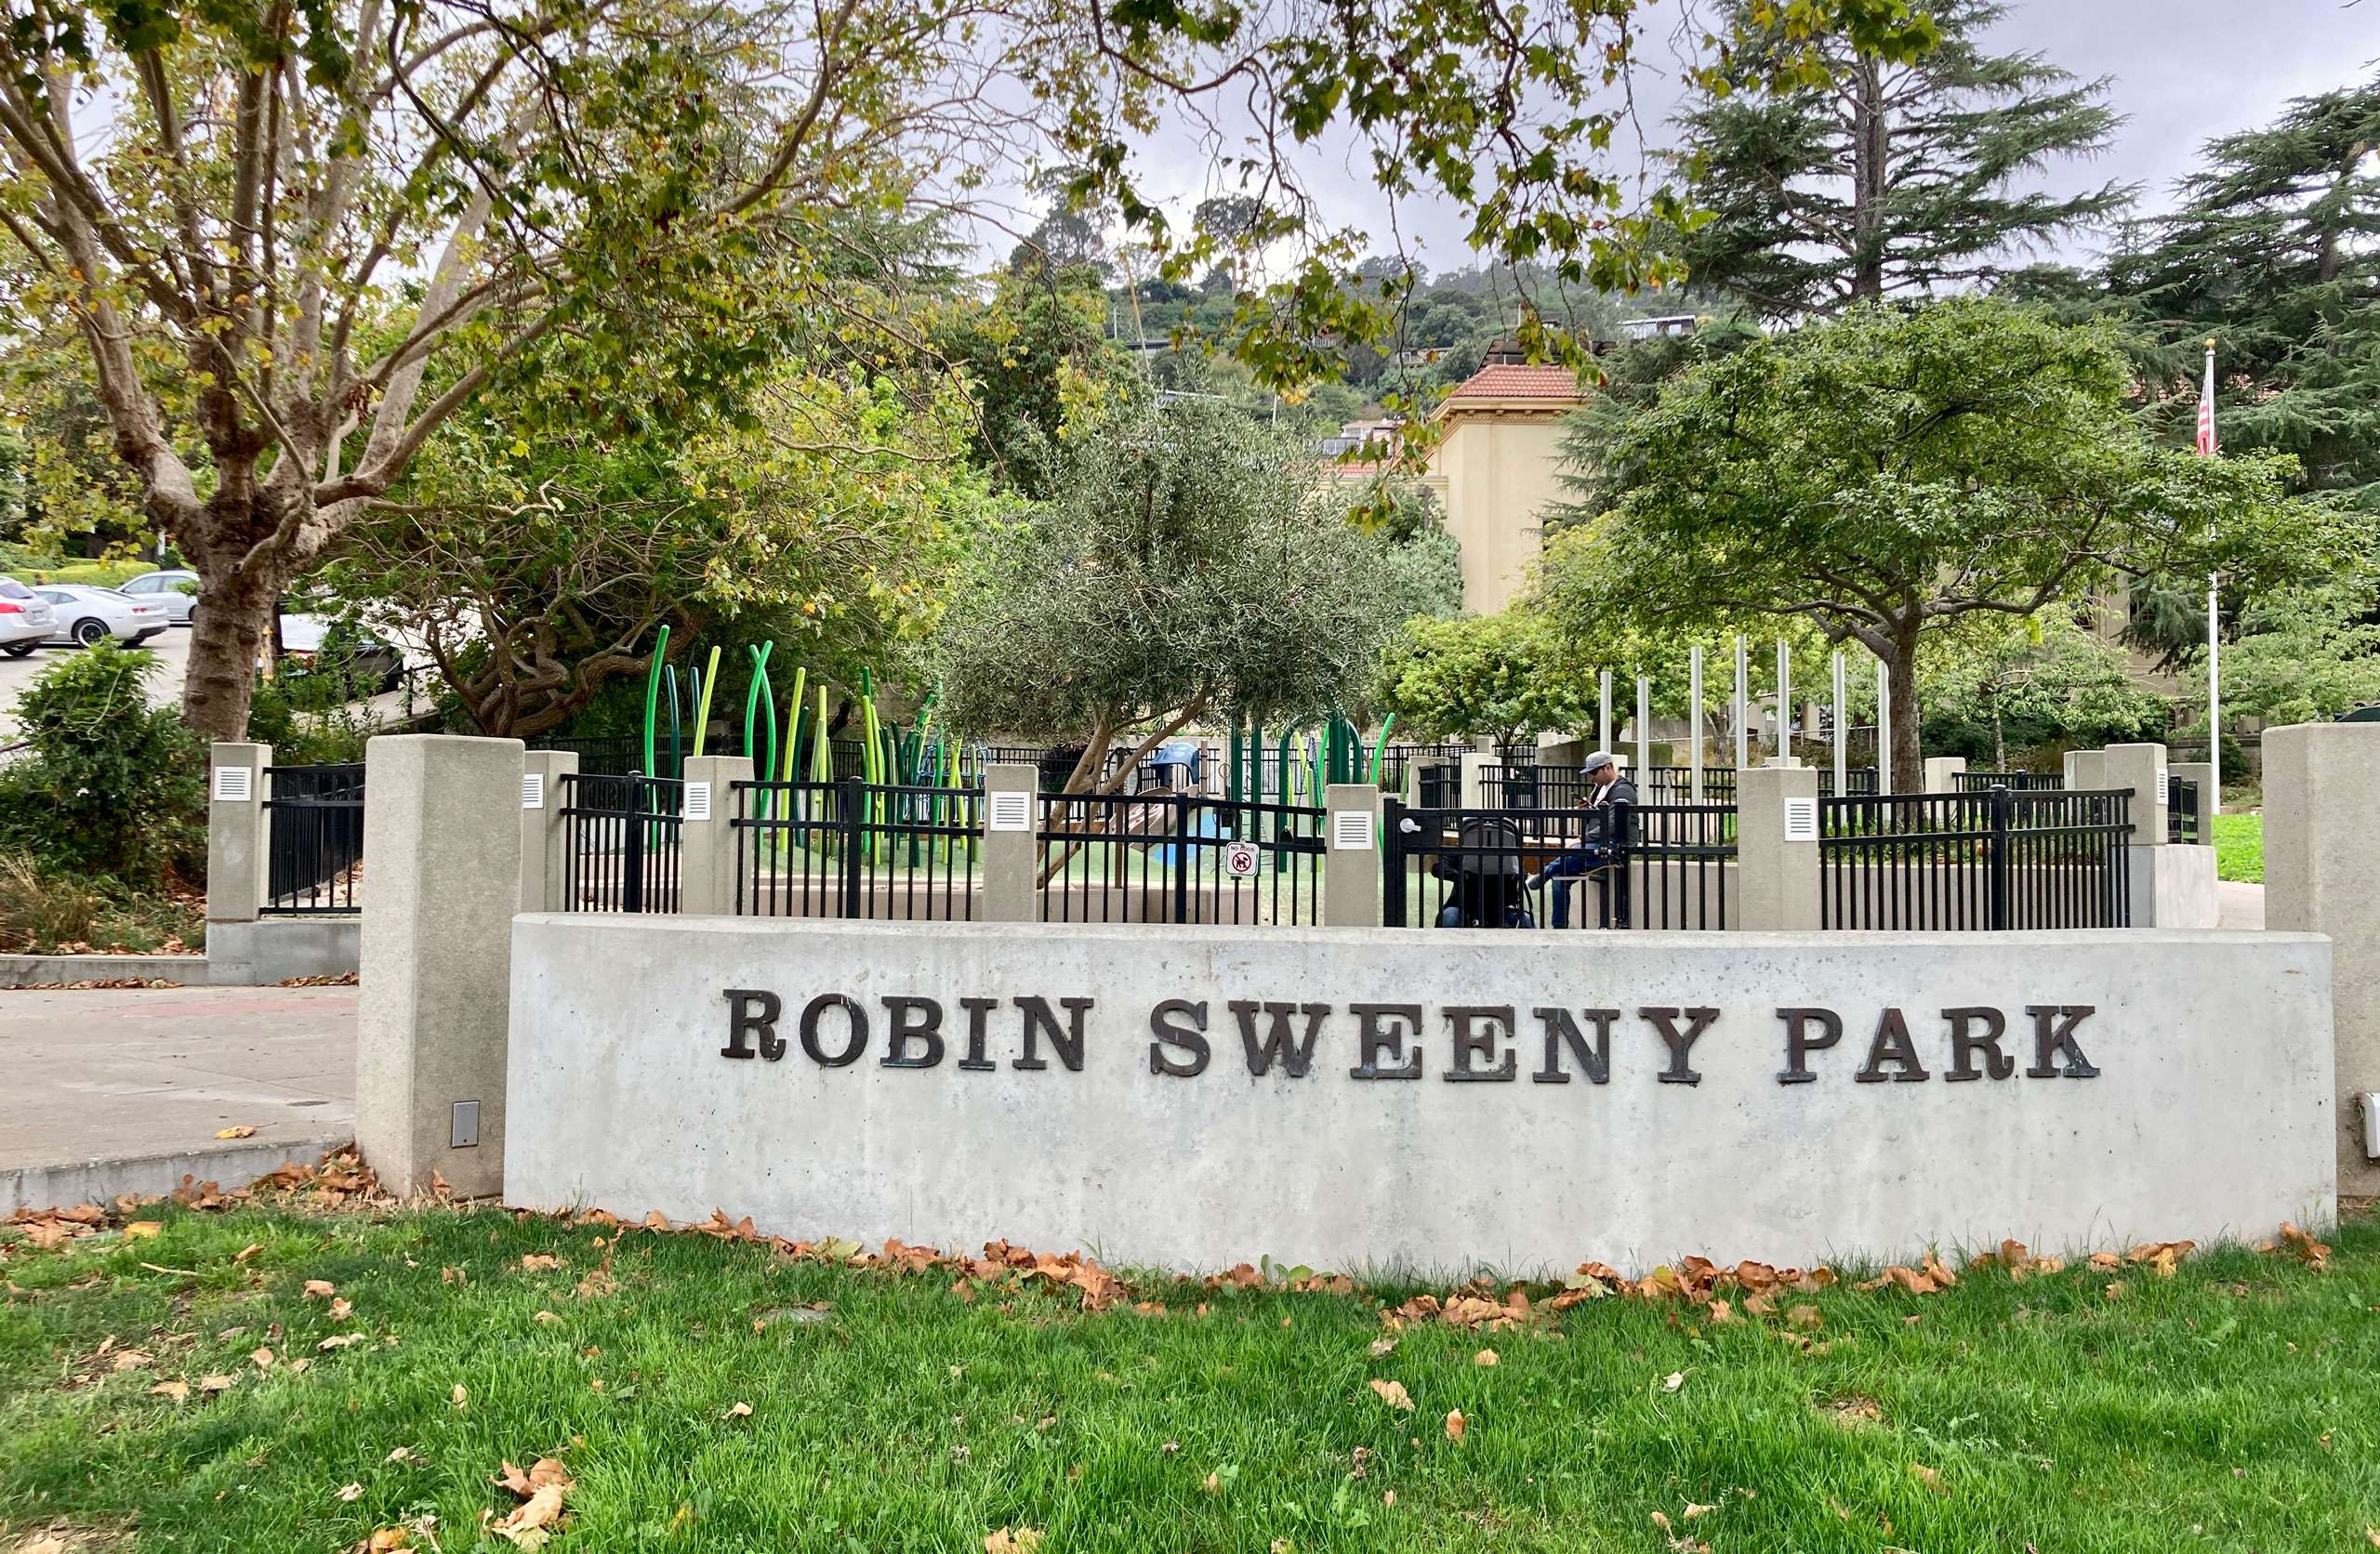 Robin Sweeny Park